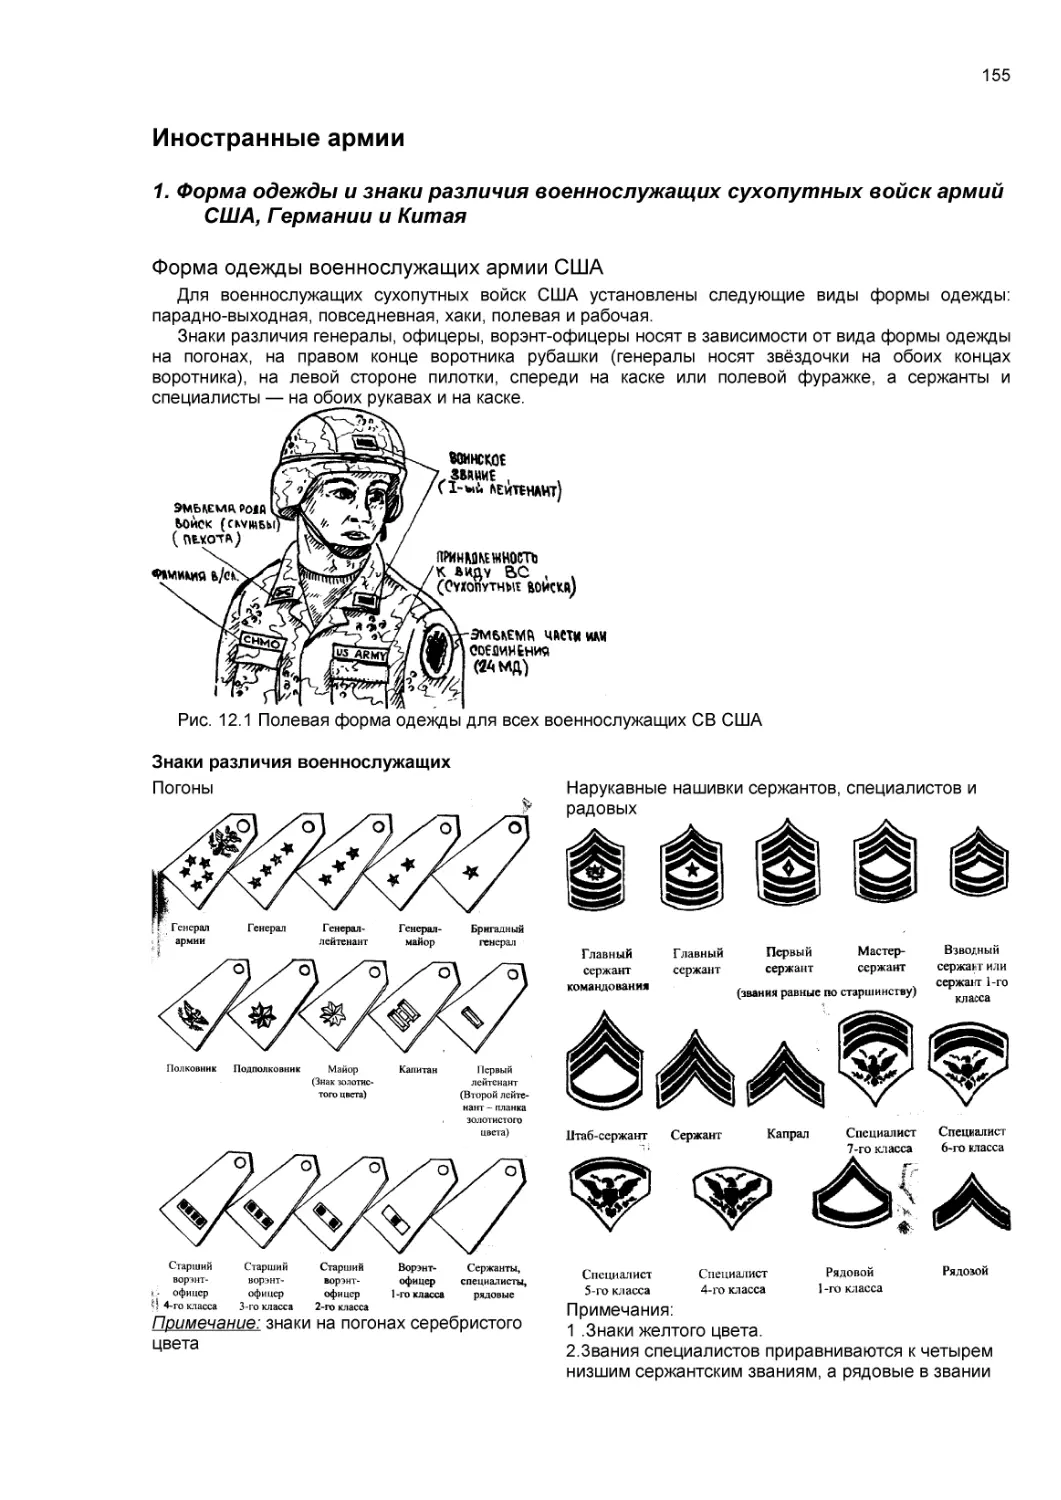 Иностранные армии. Форма одежды и знаки различия военнослужащих сухопутных войск армий США, Германии и Китая